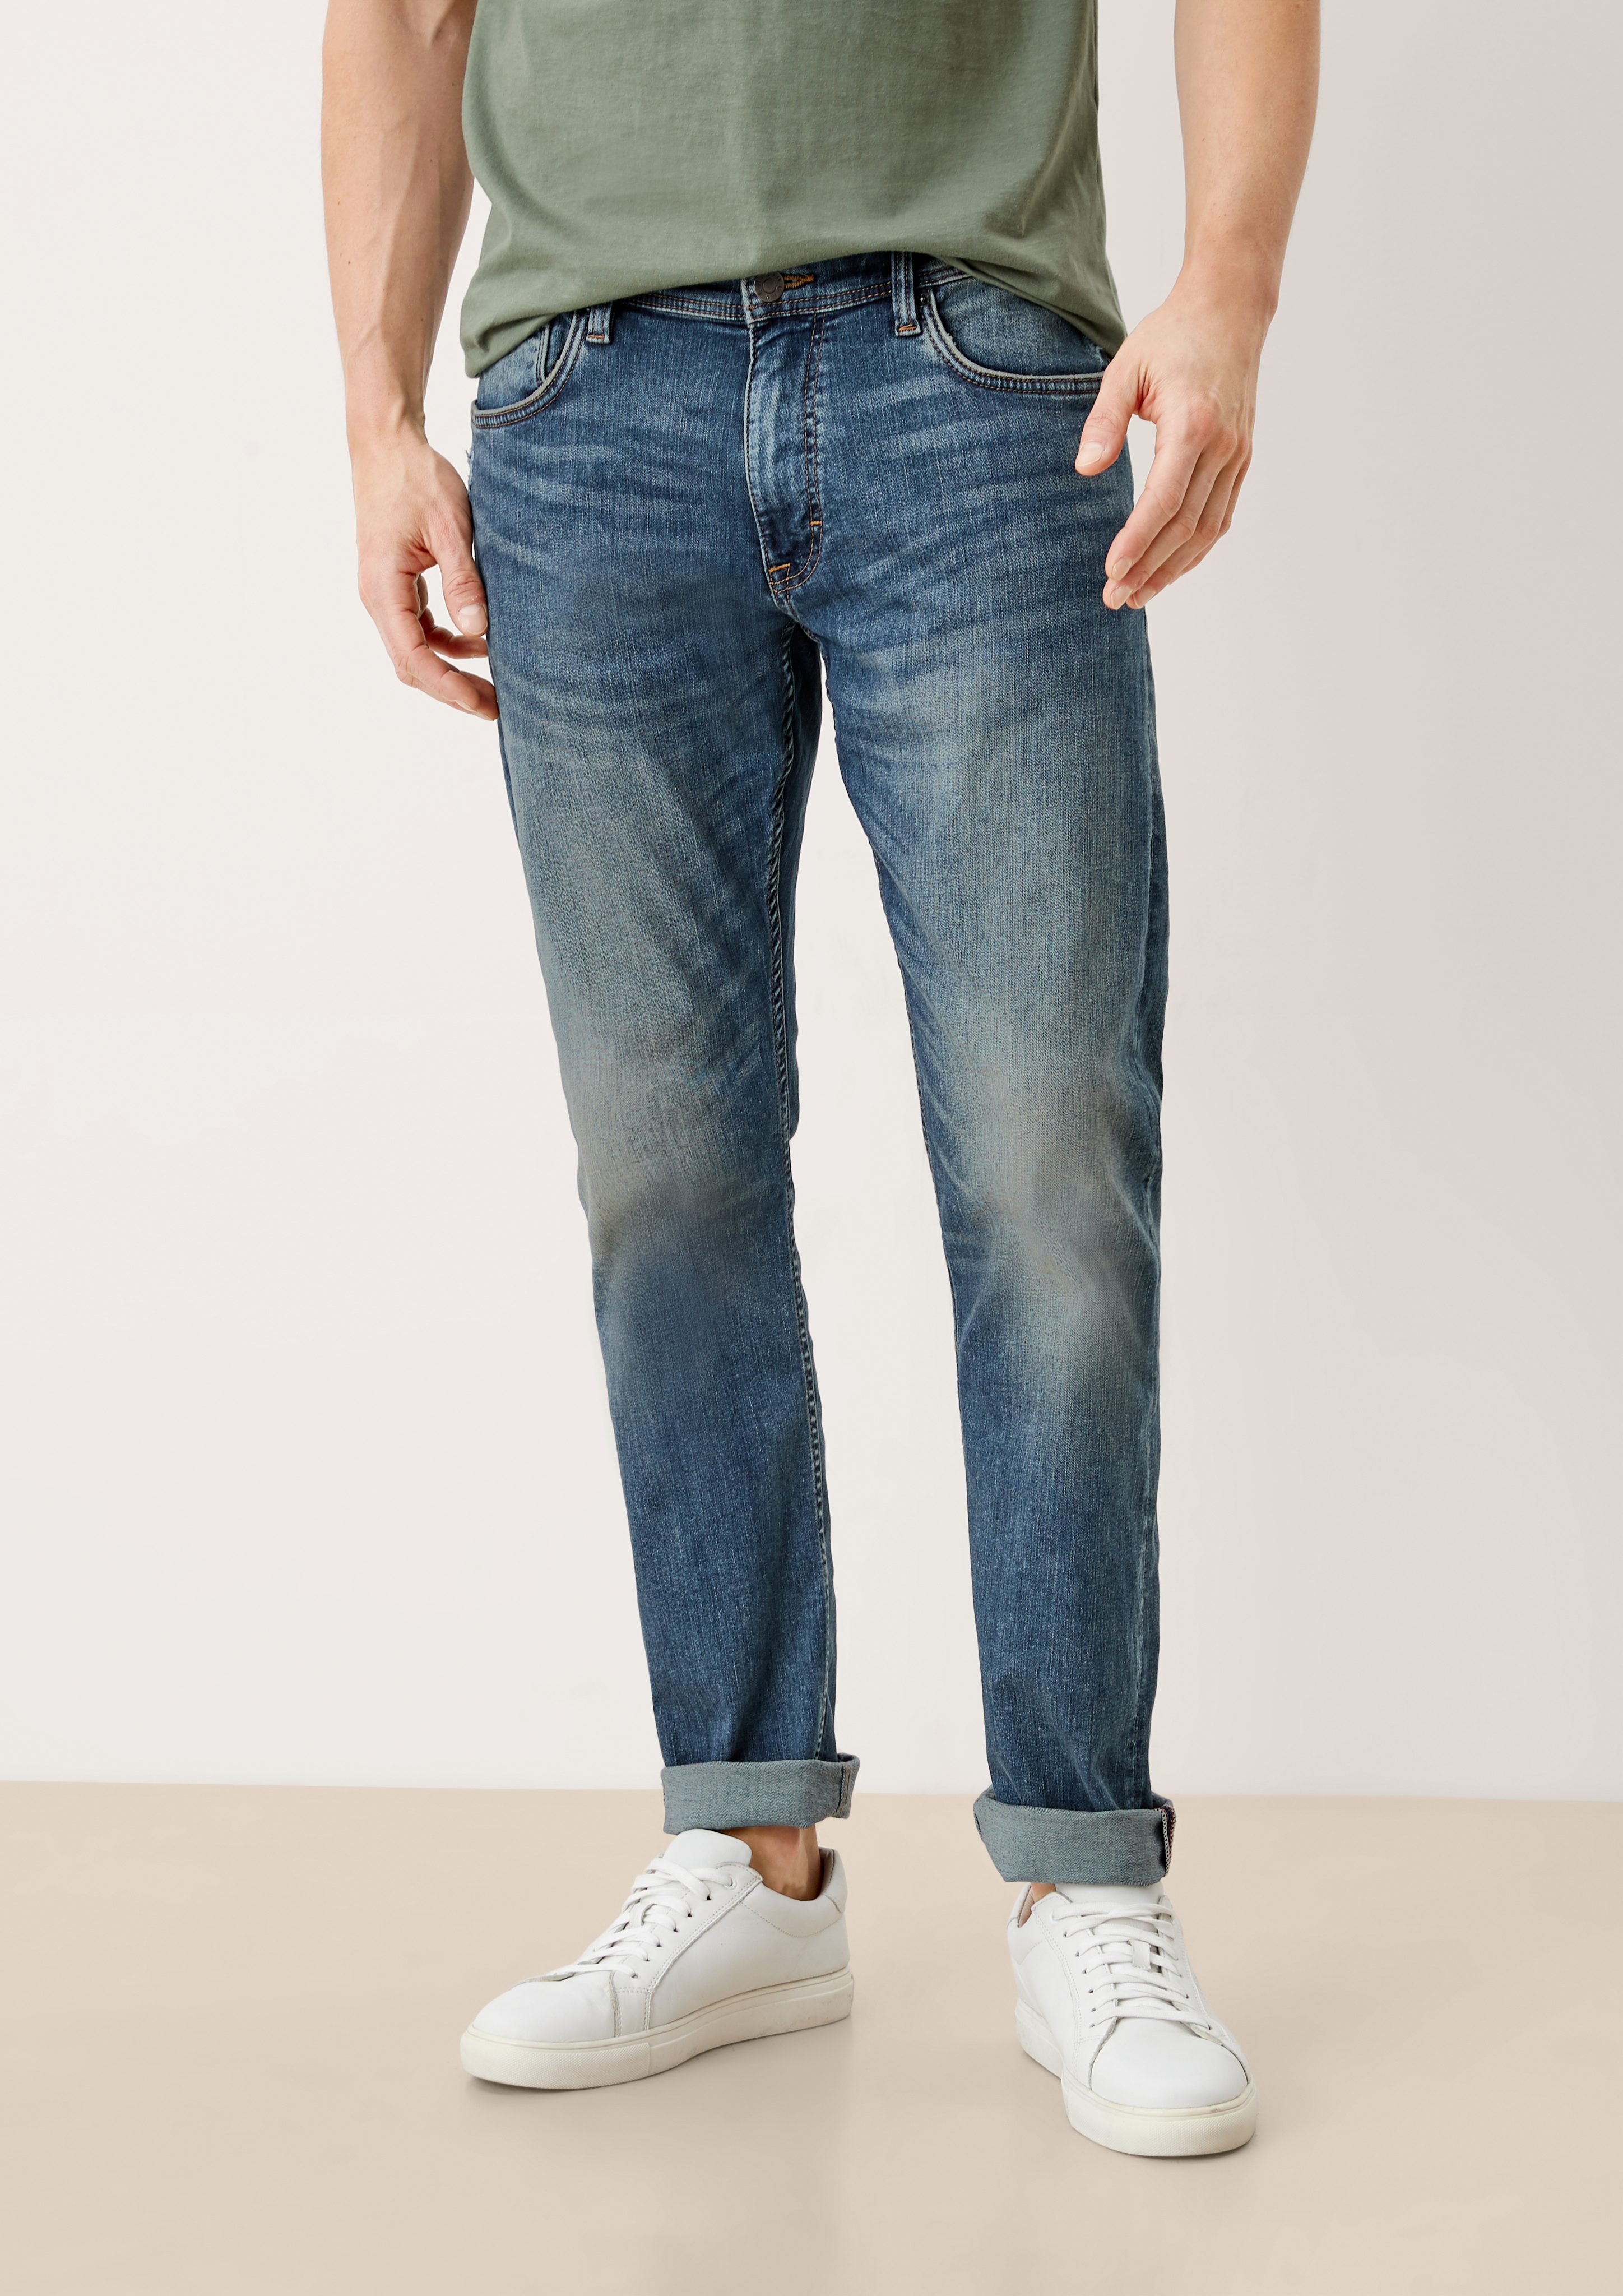 Rise 5-Pocket-Jeans Jeans / Mid Leg sretche Slim s.Oliver Destroyes, / Keith Slim Waschung / Fit blue light